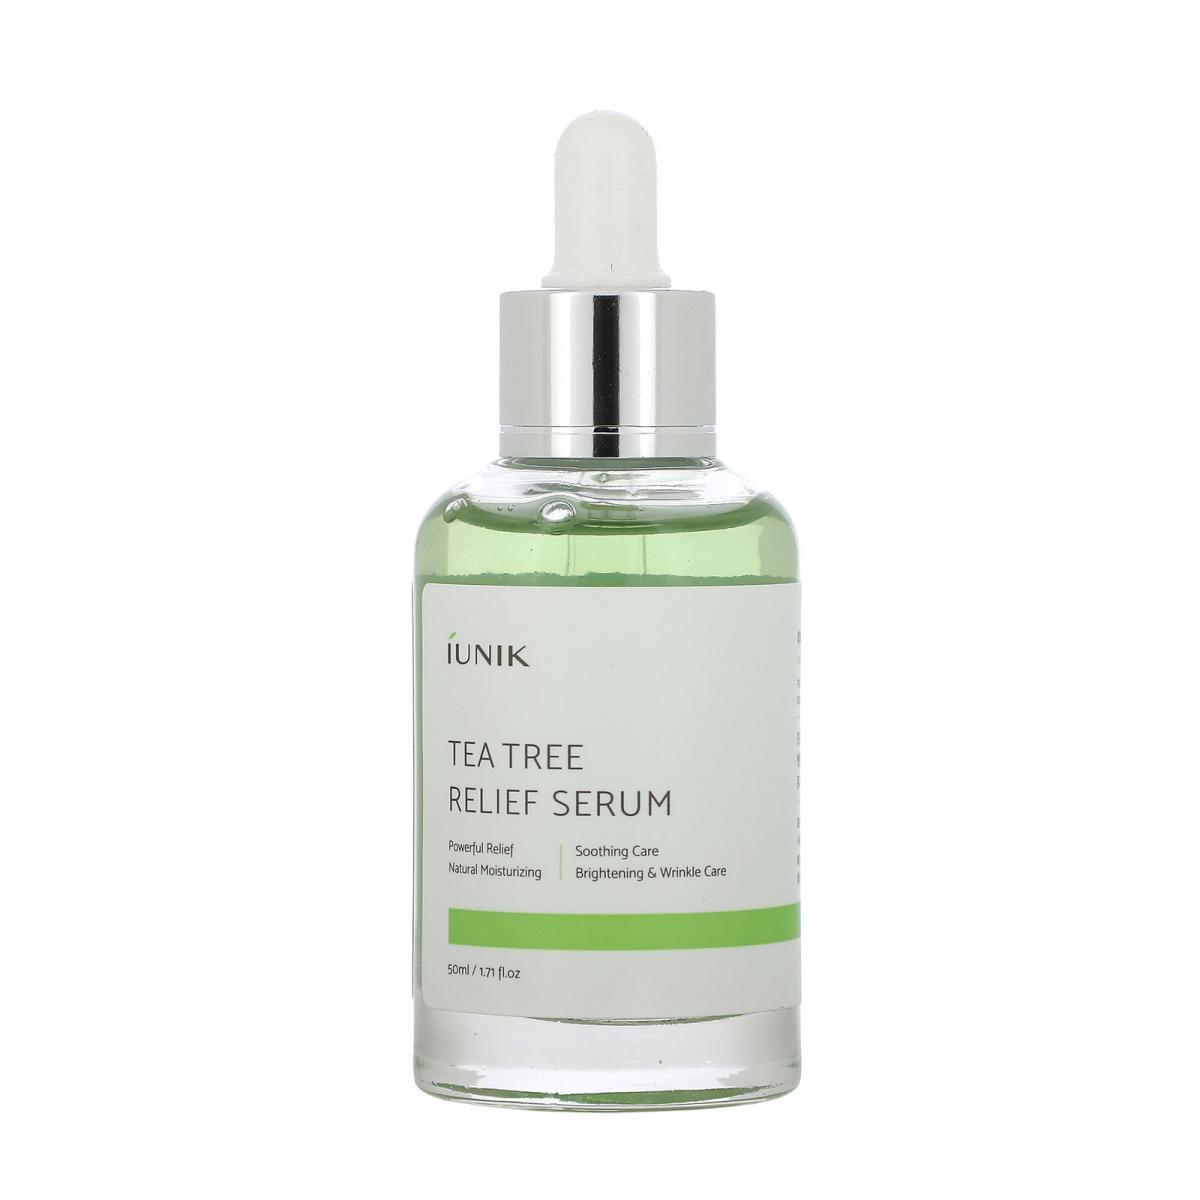 سرم تسکین دهنده برگ درخت چای - Tea tree relief serum